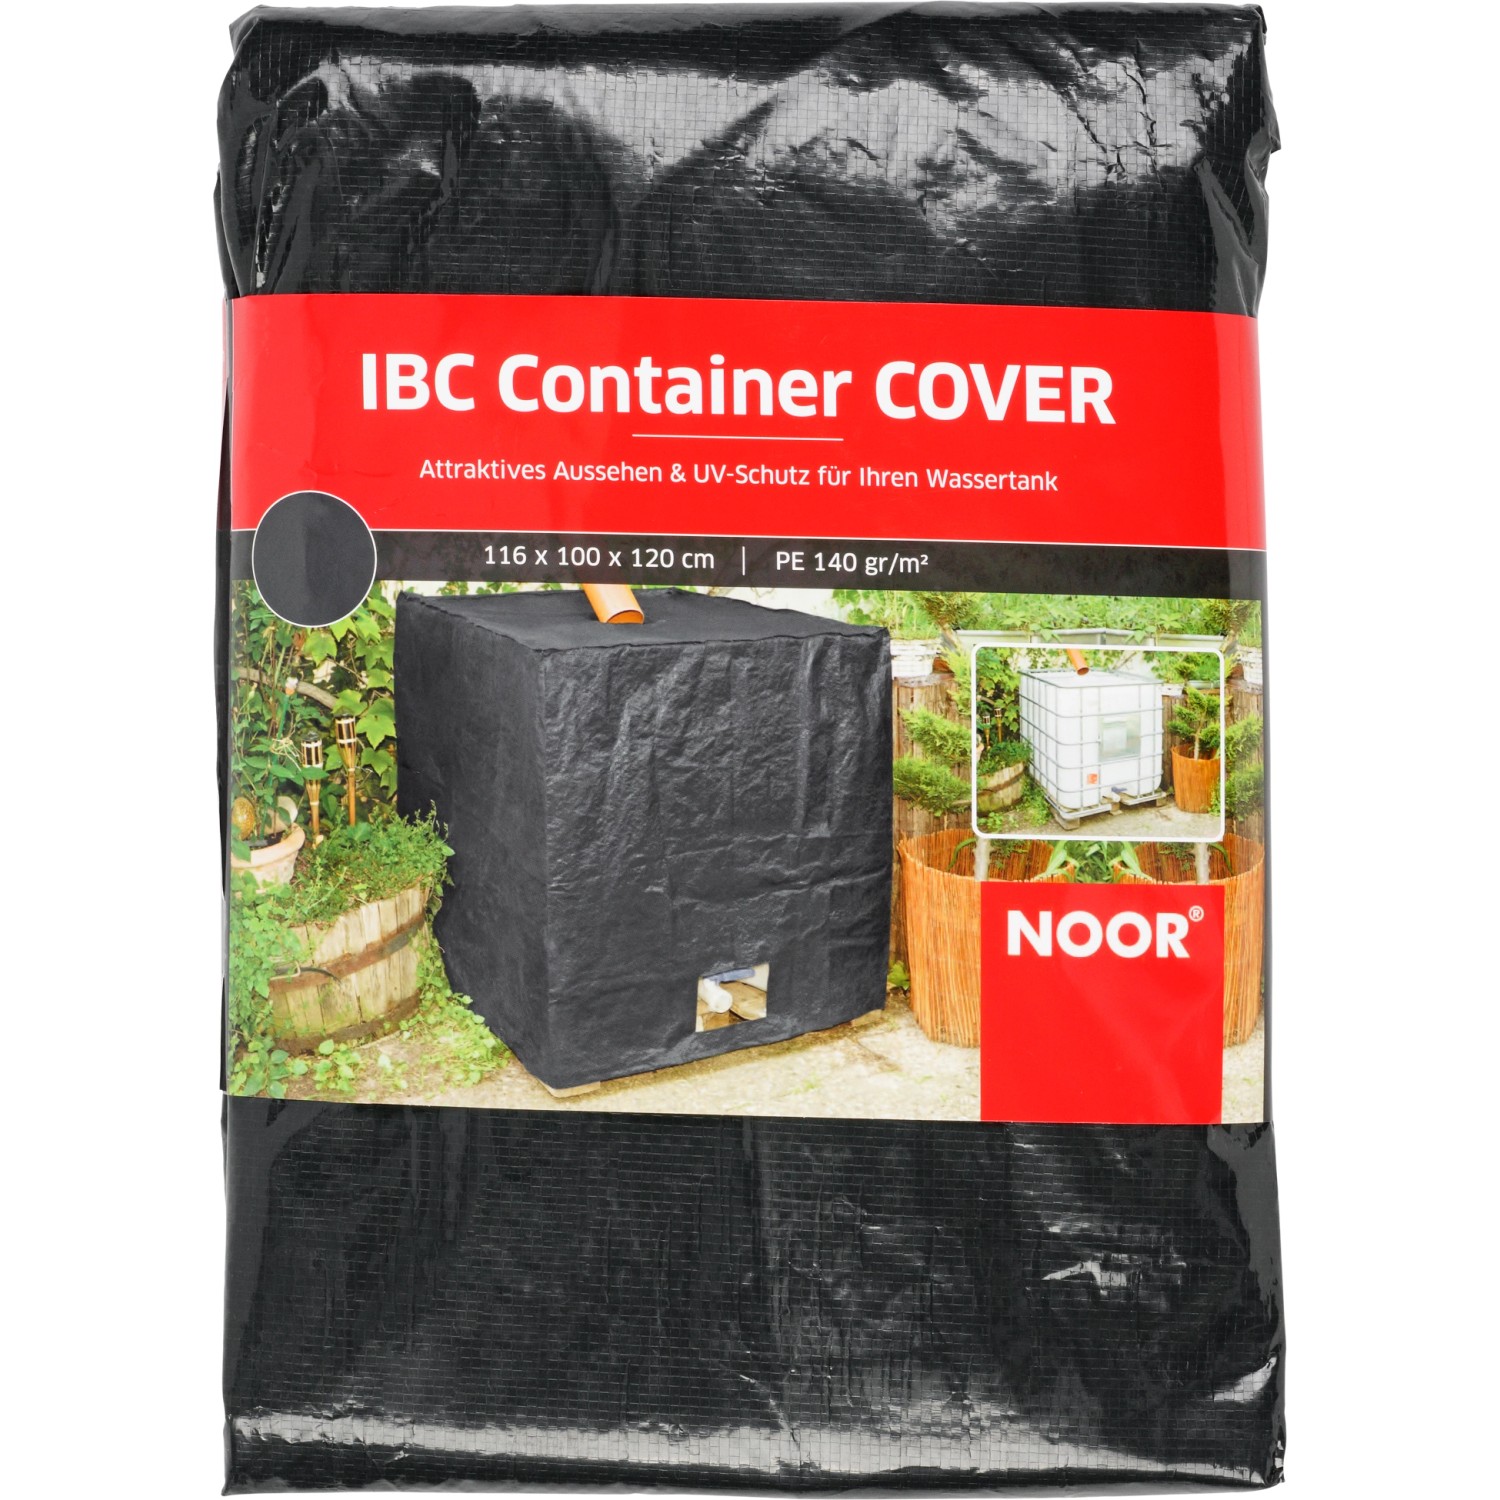 Noor IBC Container Cover Wassertank Abdeckung 120 cm x 116 cm x 100 cm Anthrazit von Noor